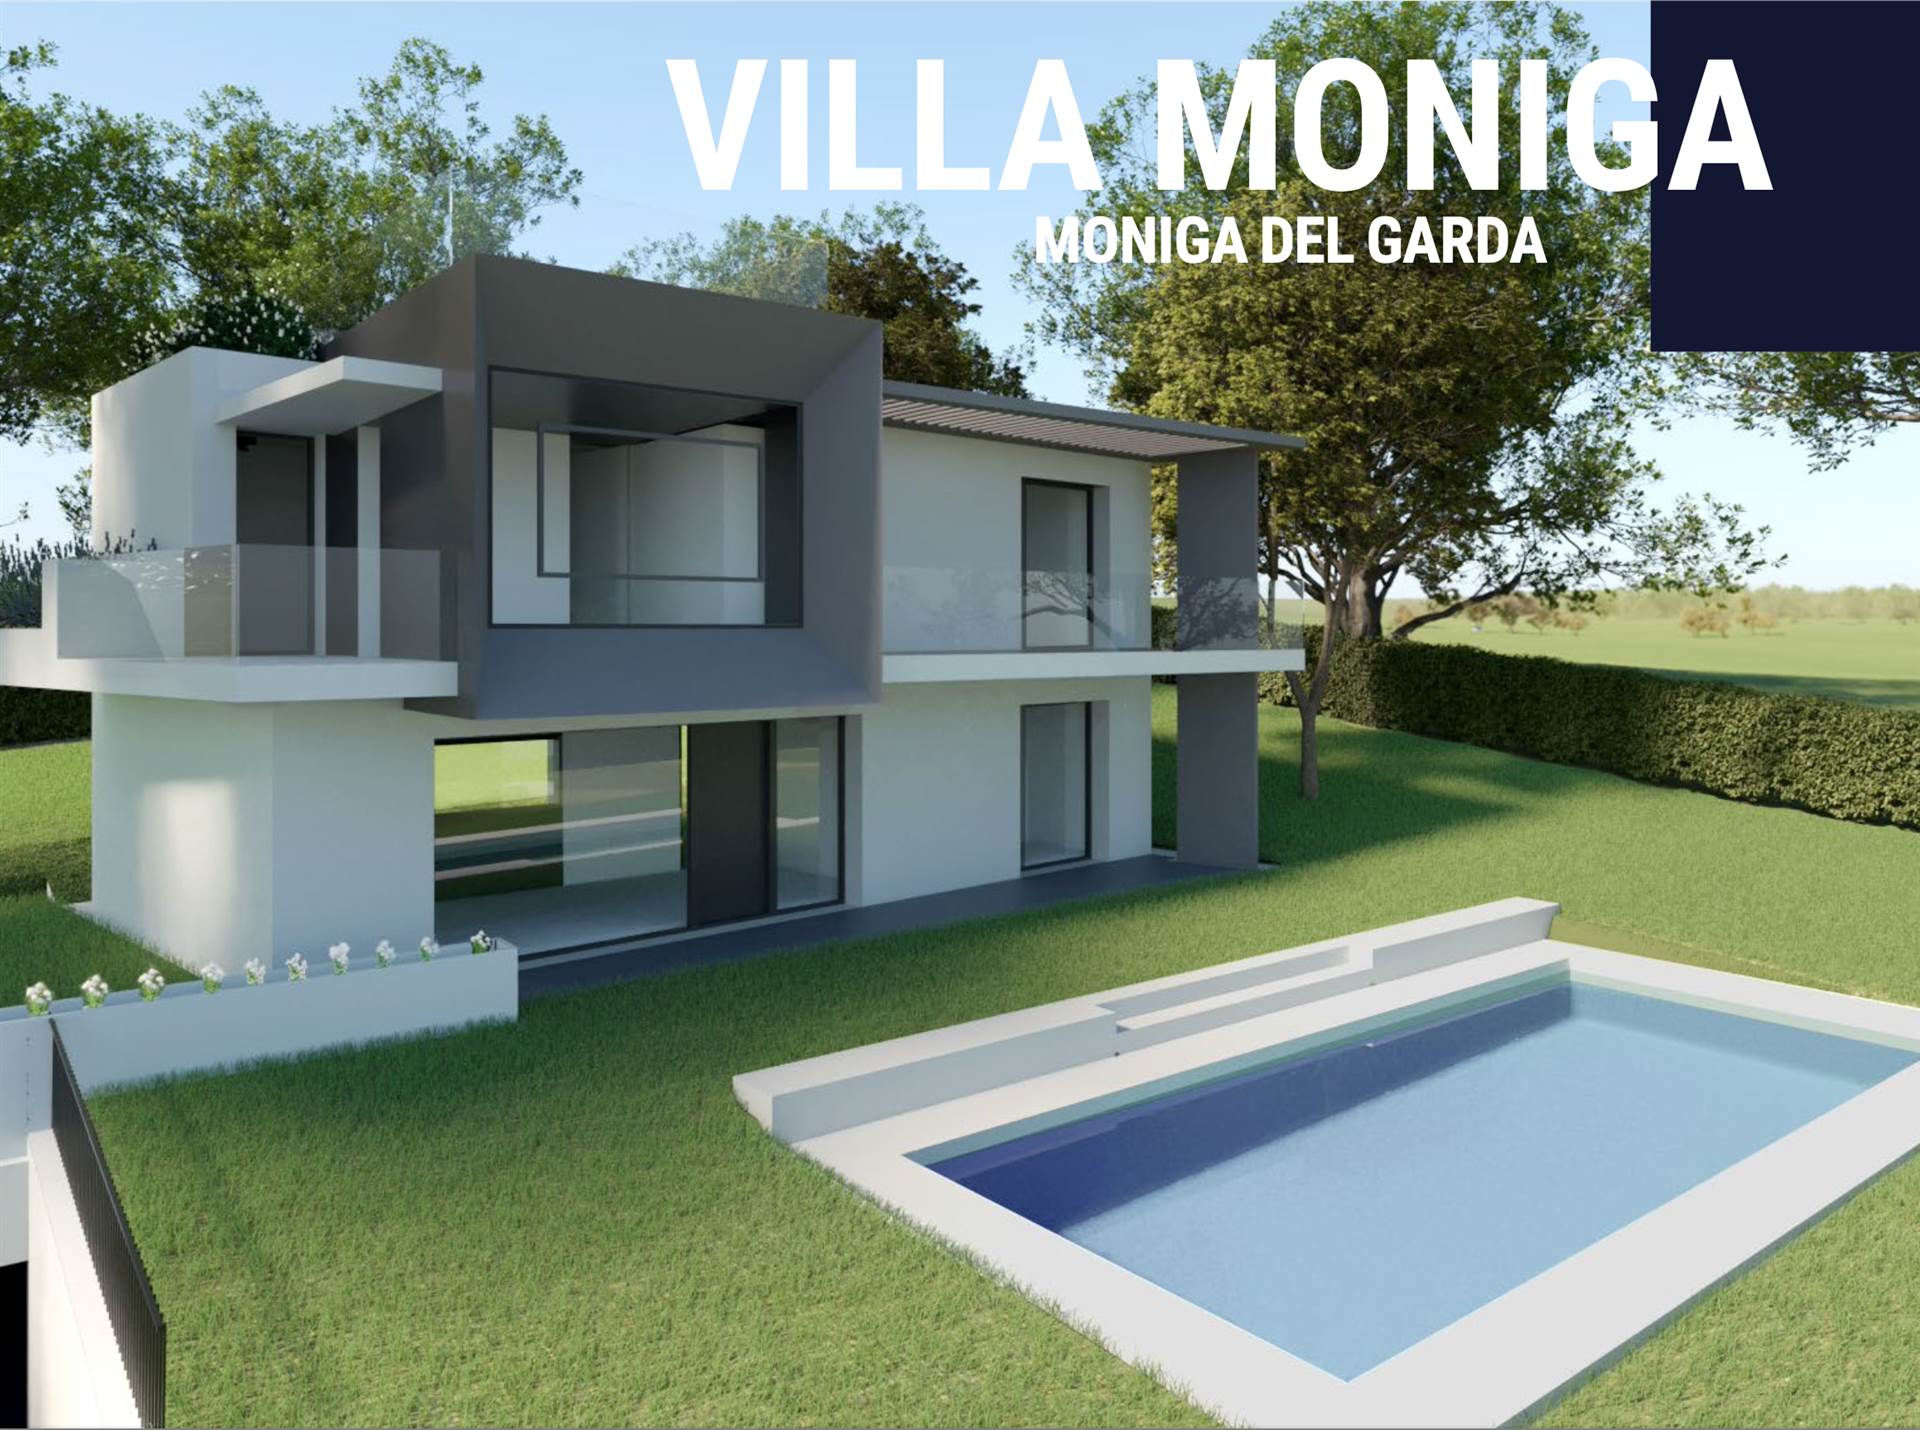 MONIGA DEL GARDA, Villa zu verkaufen von 190 Qm, Neubau, Heizung Bodenheizung, Energie-klasse: A+, Epi: 1 kwh/m2 jahr, am boden Land, 